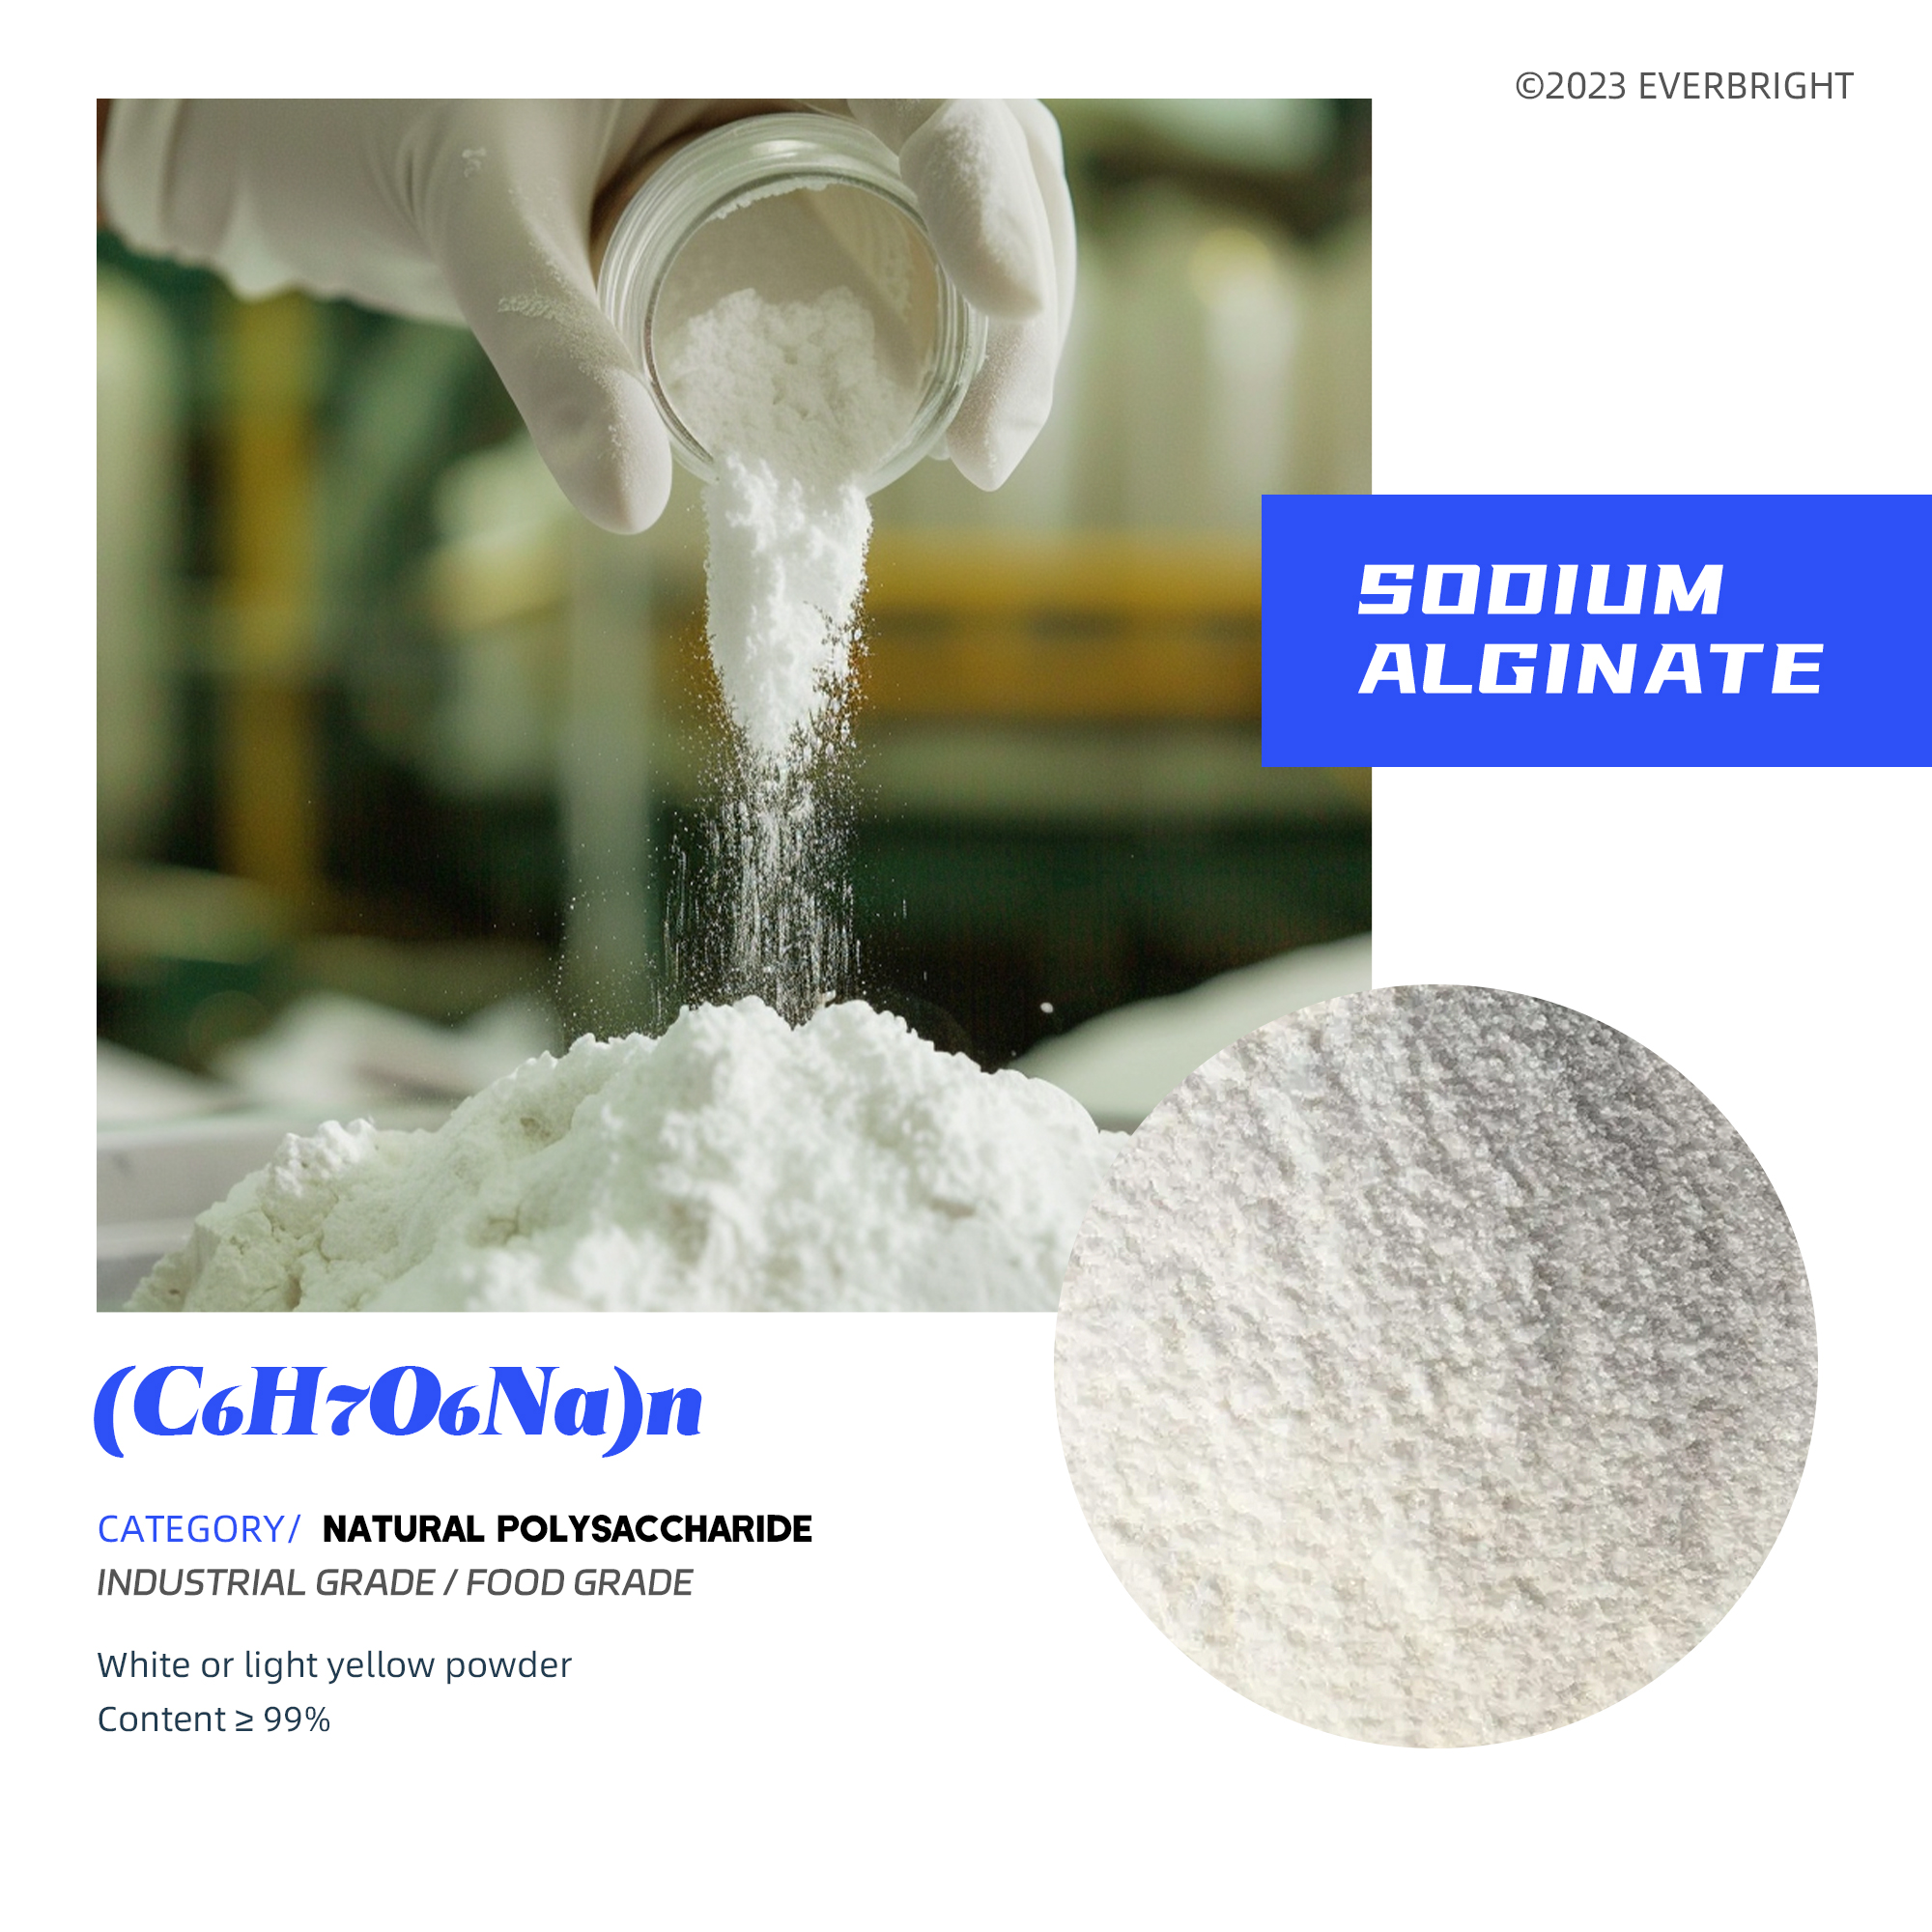 Sodium Alginate